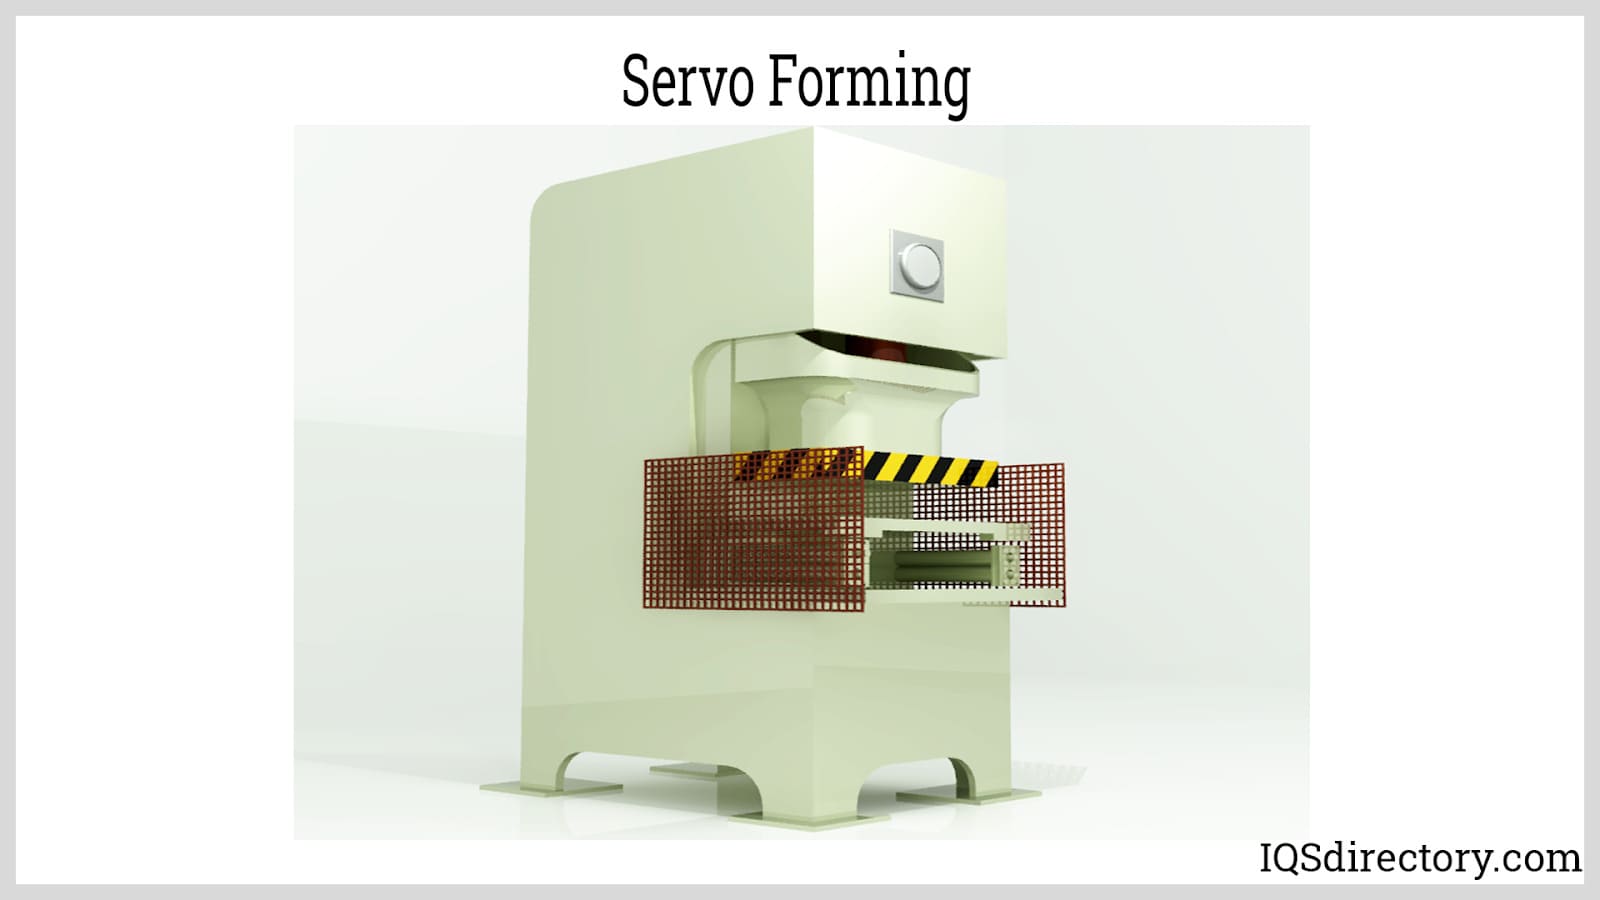 Servo Forming